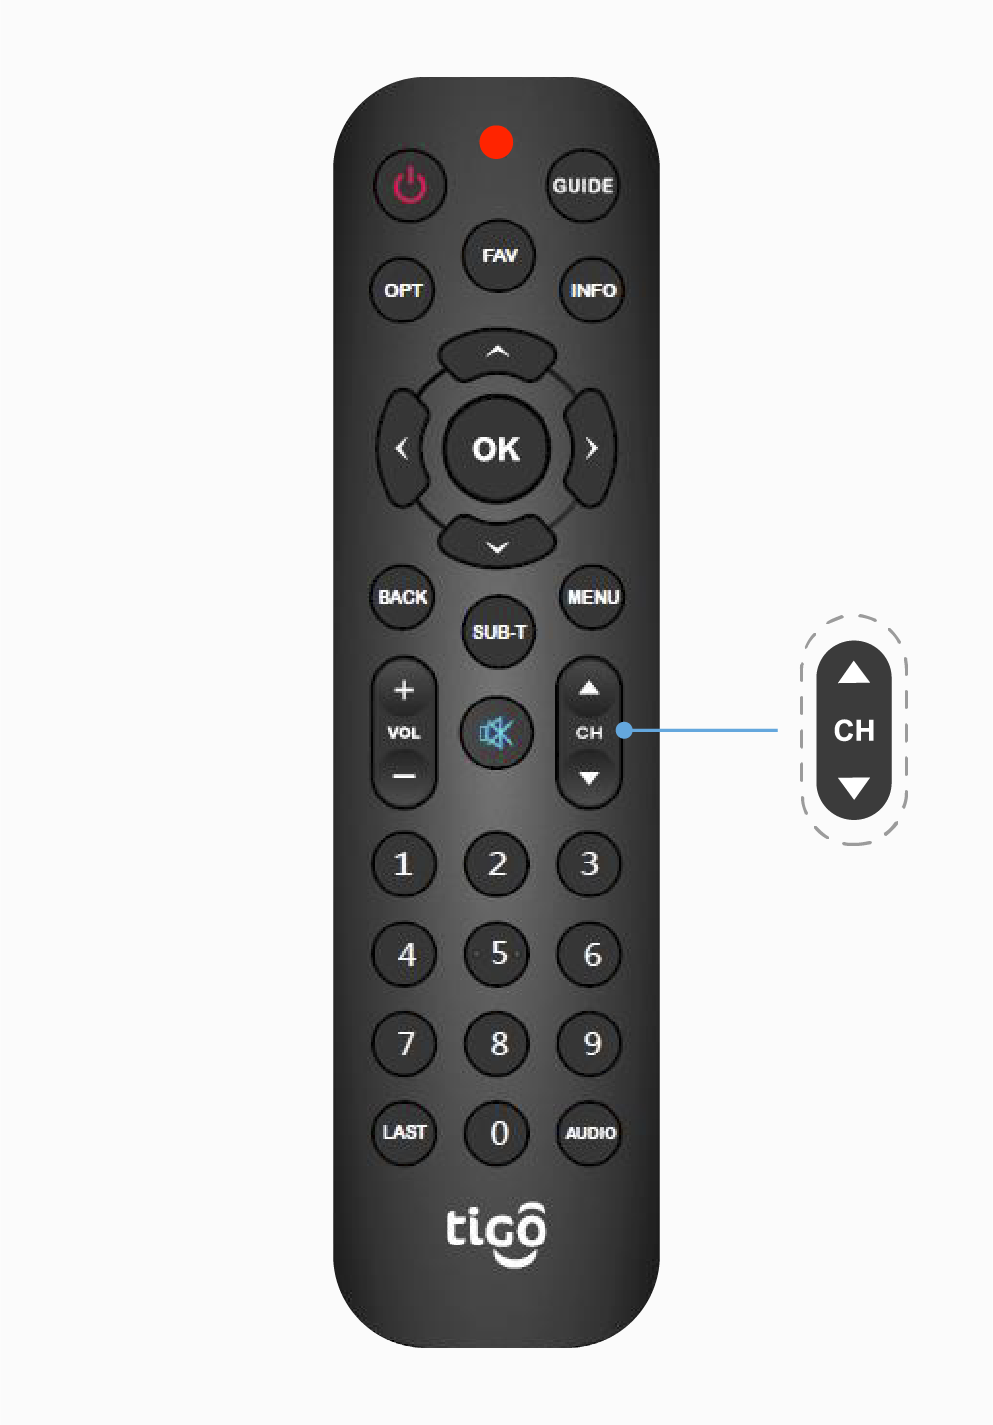 aw-buscar codigo automatico remote control tigo